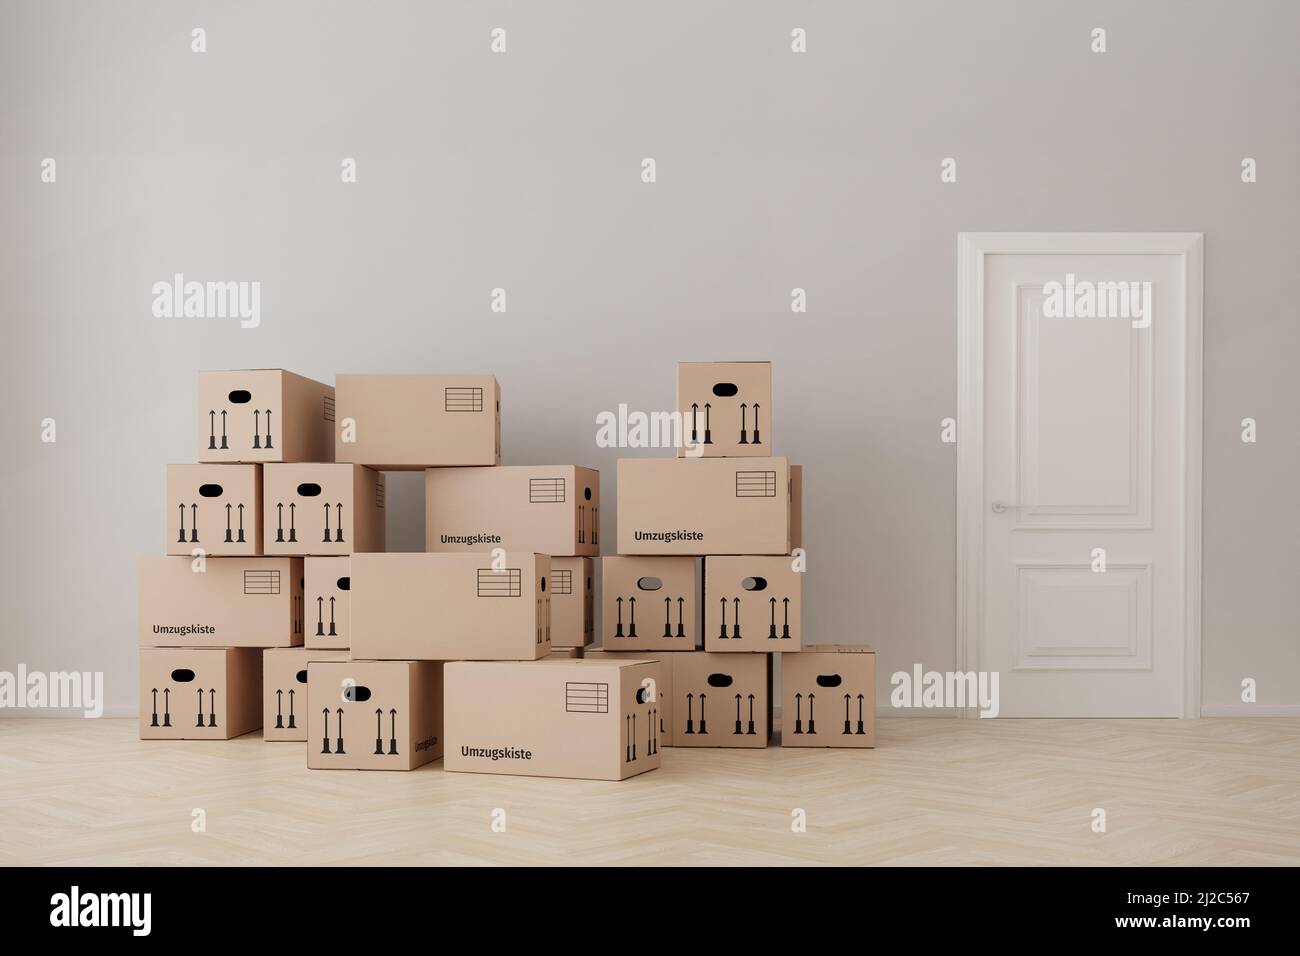 Un appartamento vuoto con scatole mobili (parola tedesca 'Umzugskiste' = 'scatola mobile' su alcuni di essi), pavimento in legno, parete, porta. Foto Stock